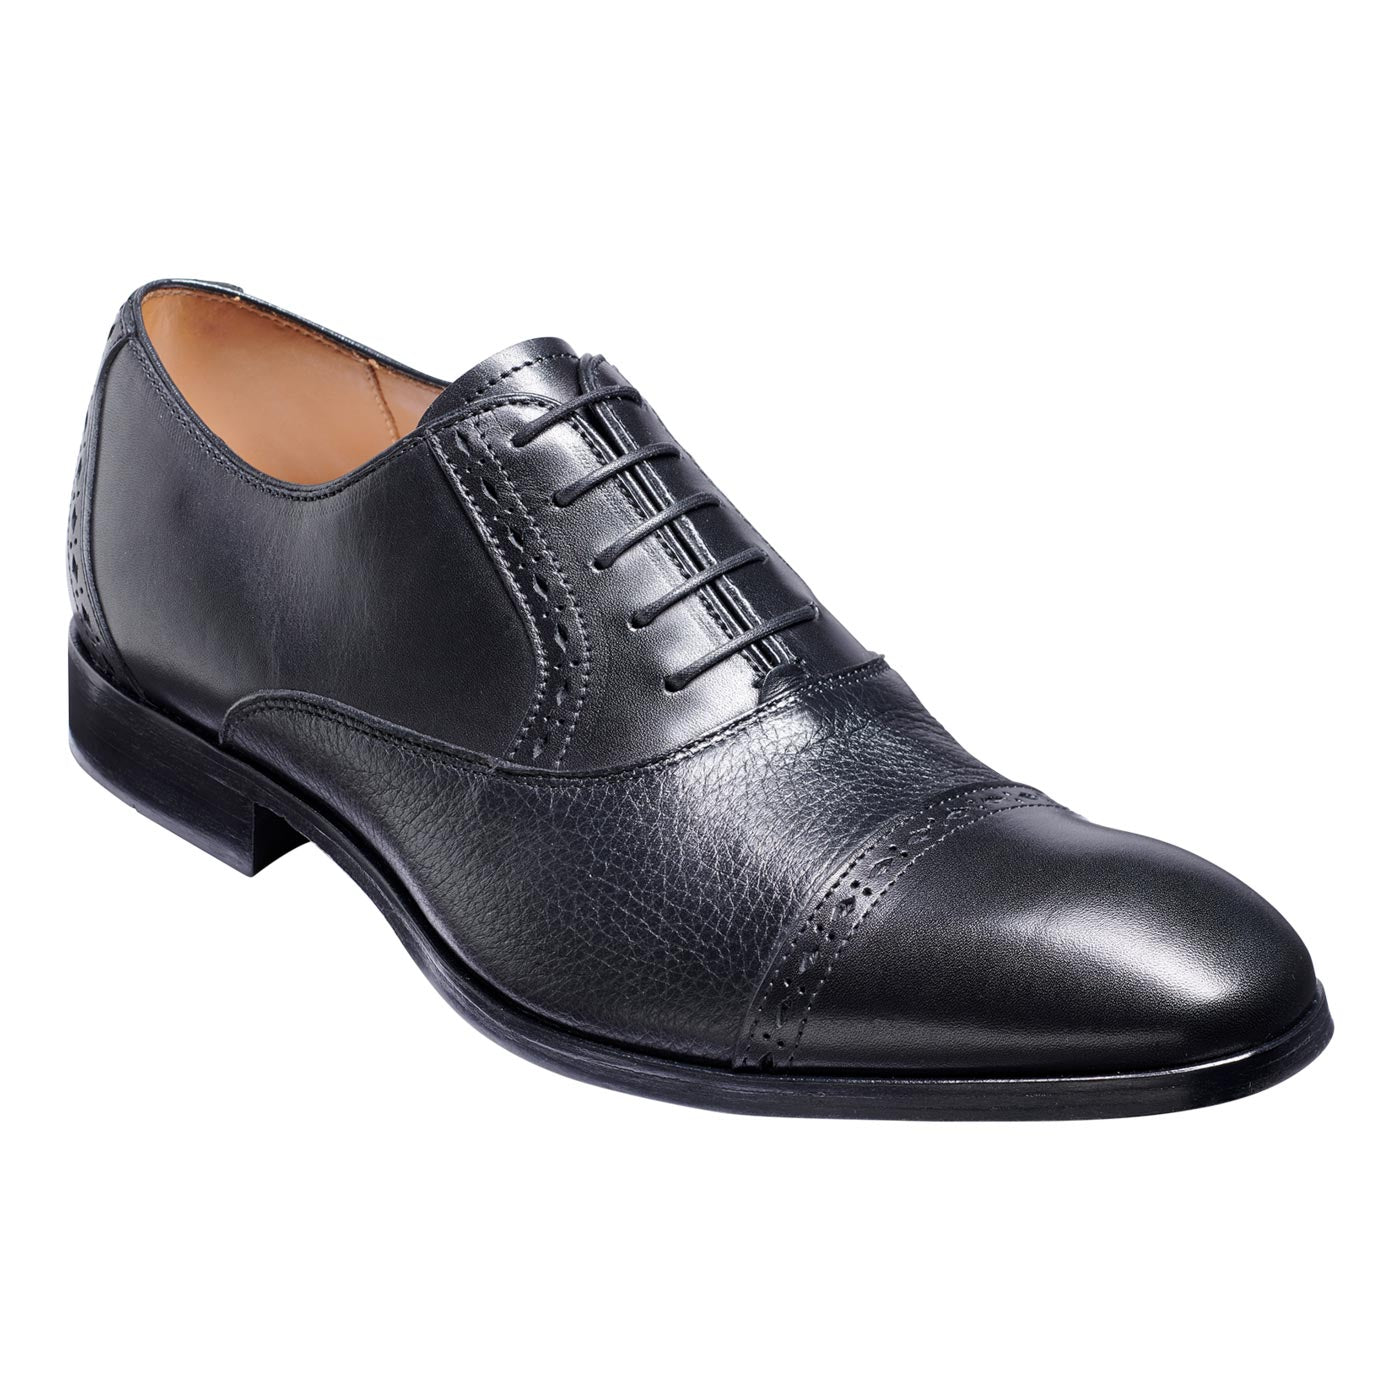 Barker Ramsgate Black Calf Black Deerskin Formal Shoes